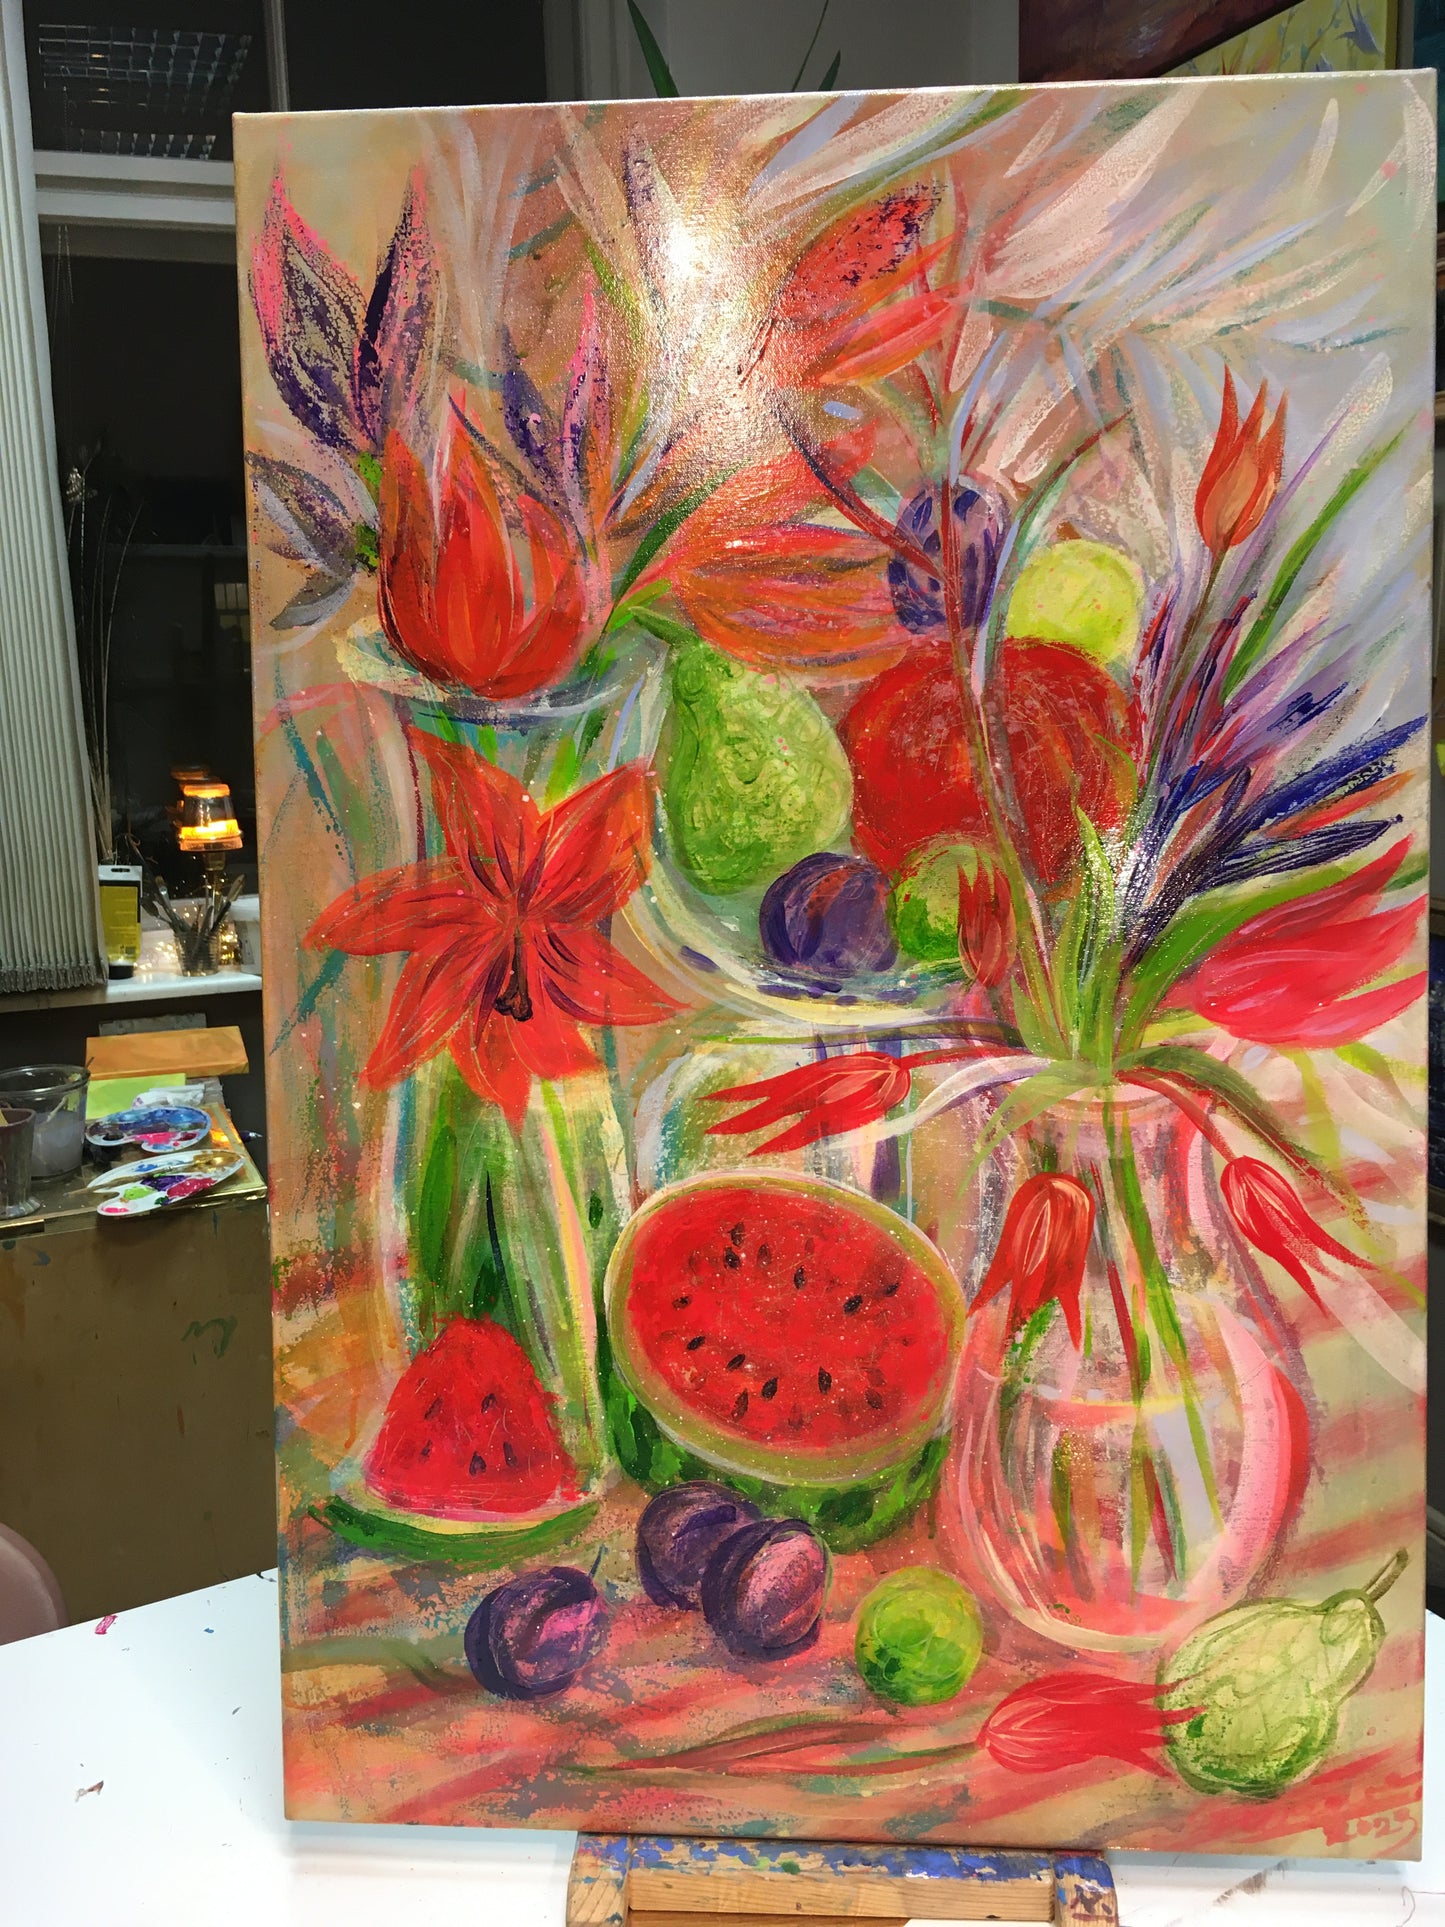 Stil life with watermelon / 90x60cm / Acrylic, canvas